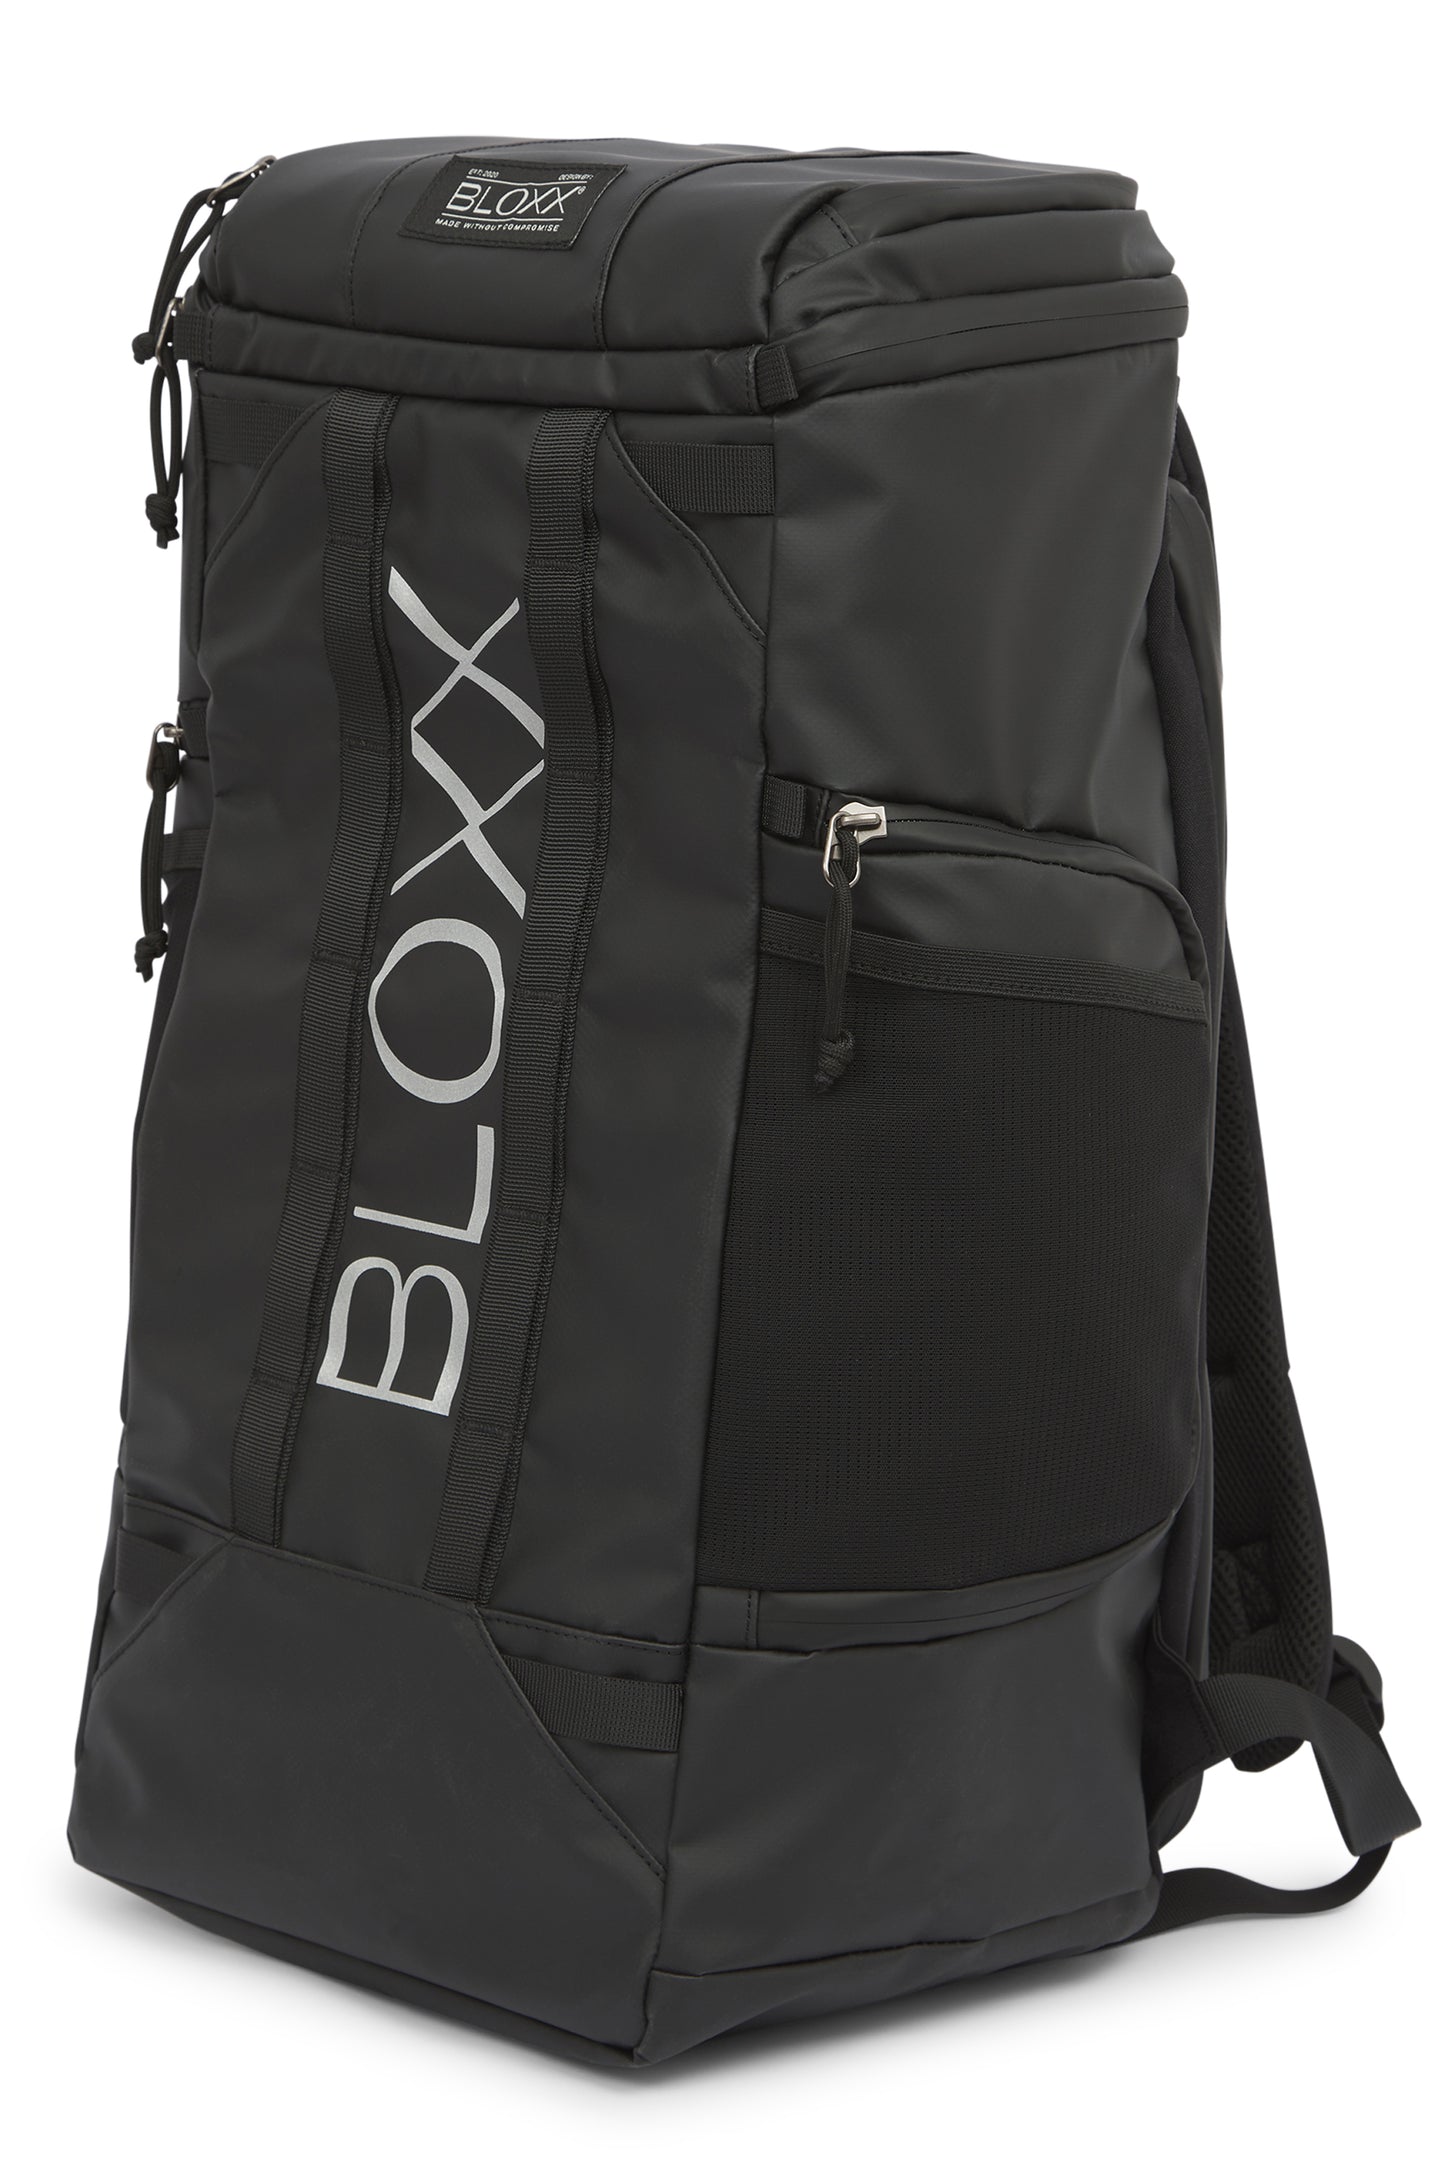 BLOXX Bag